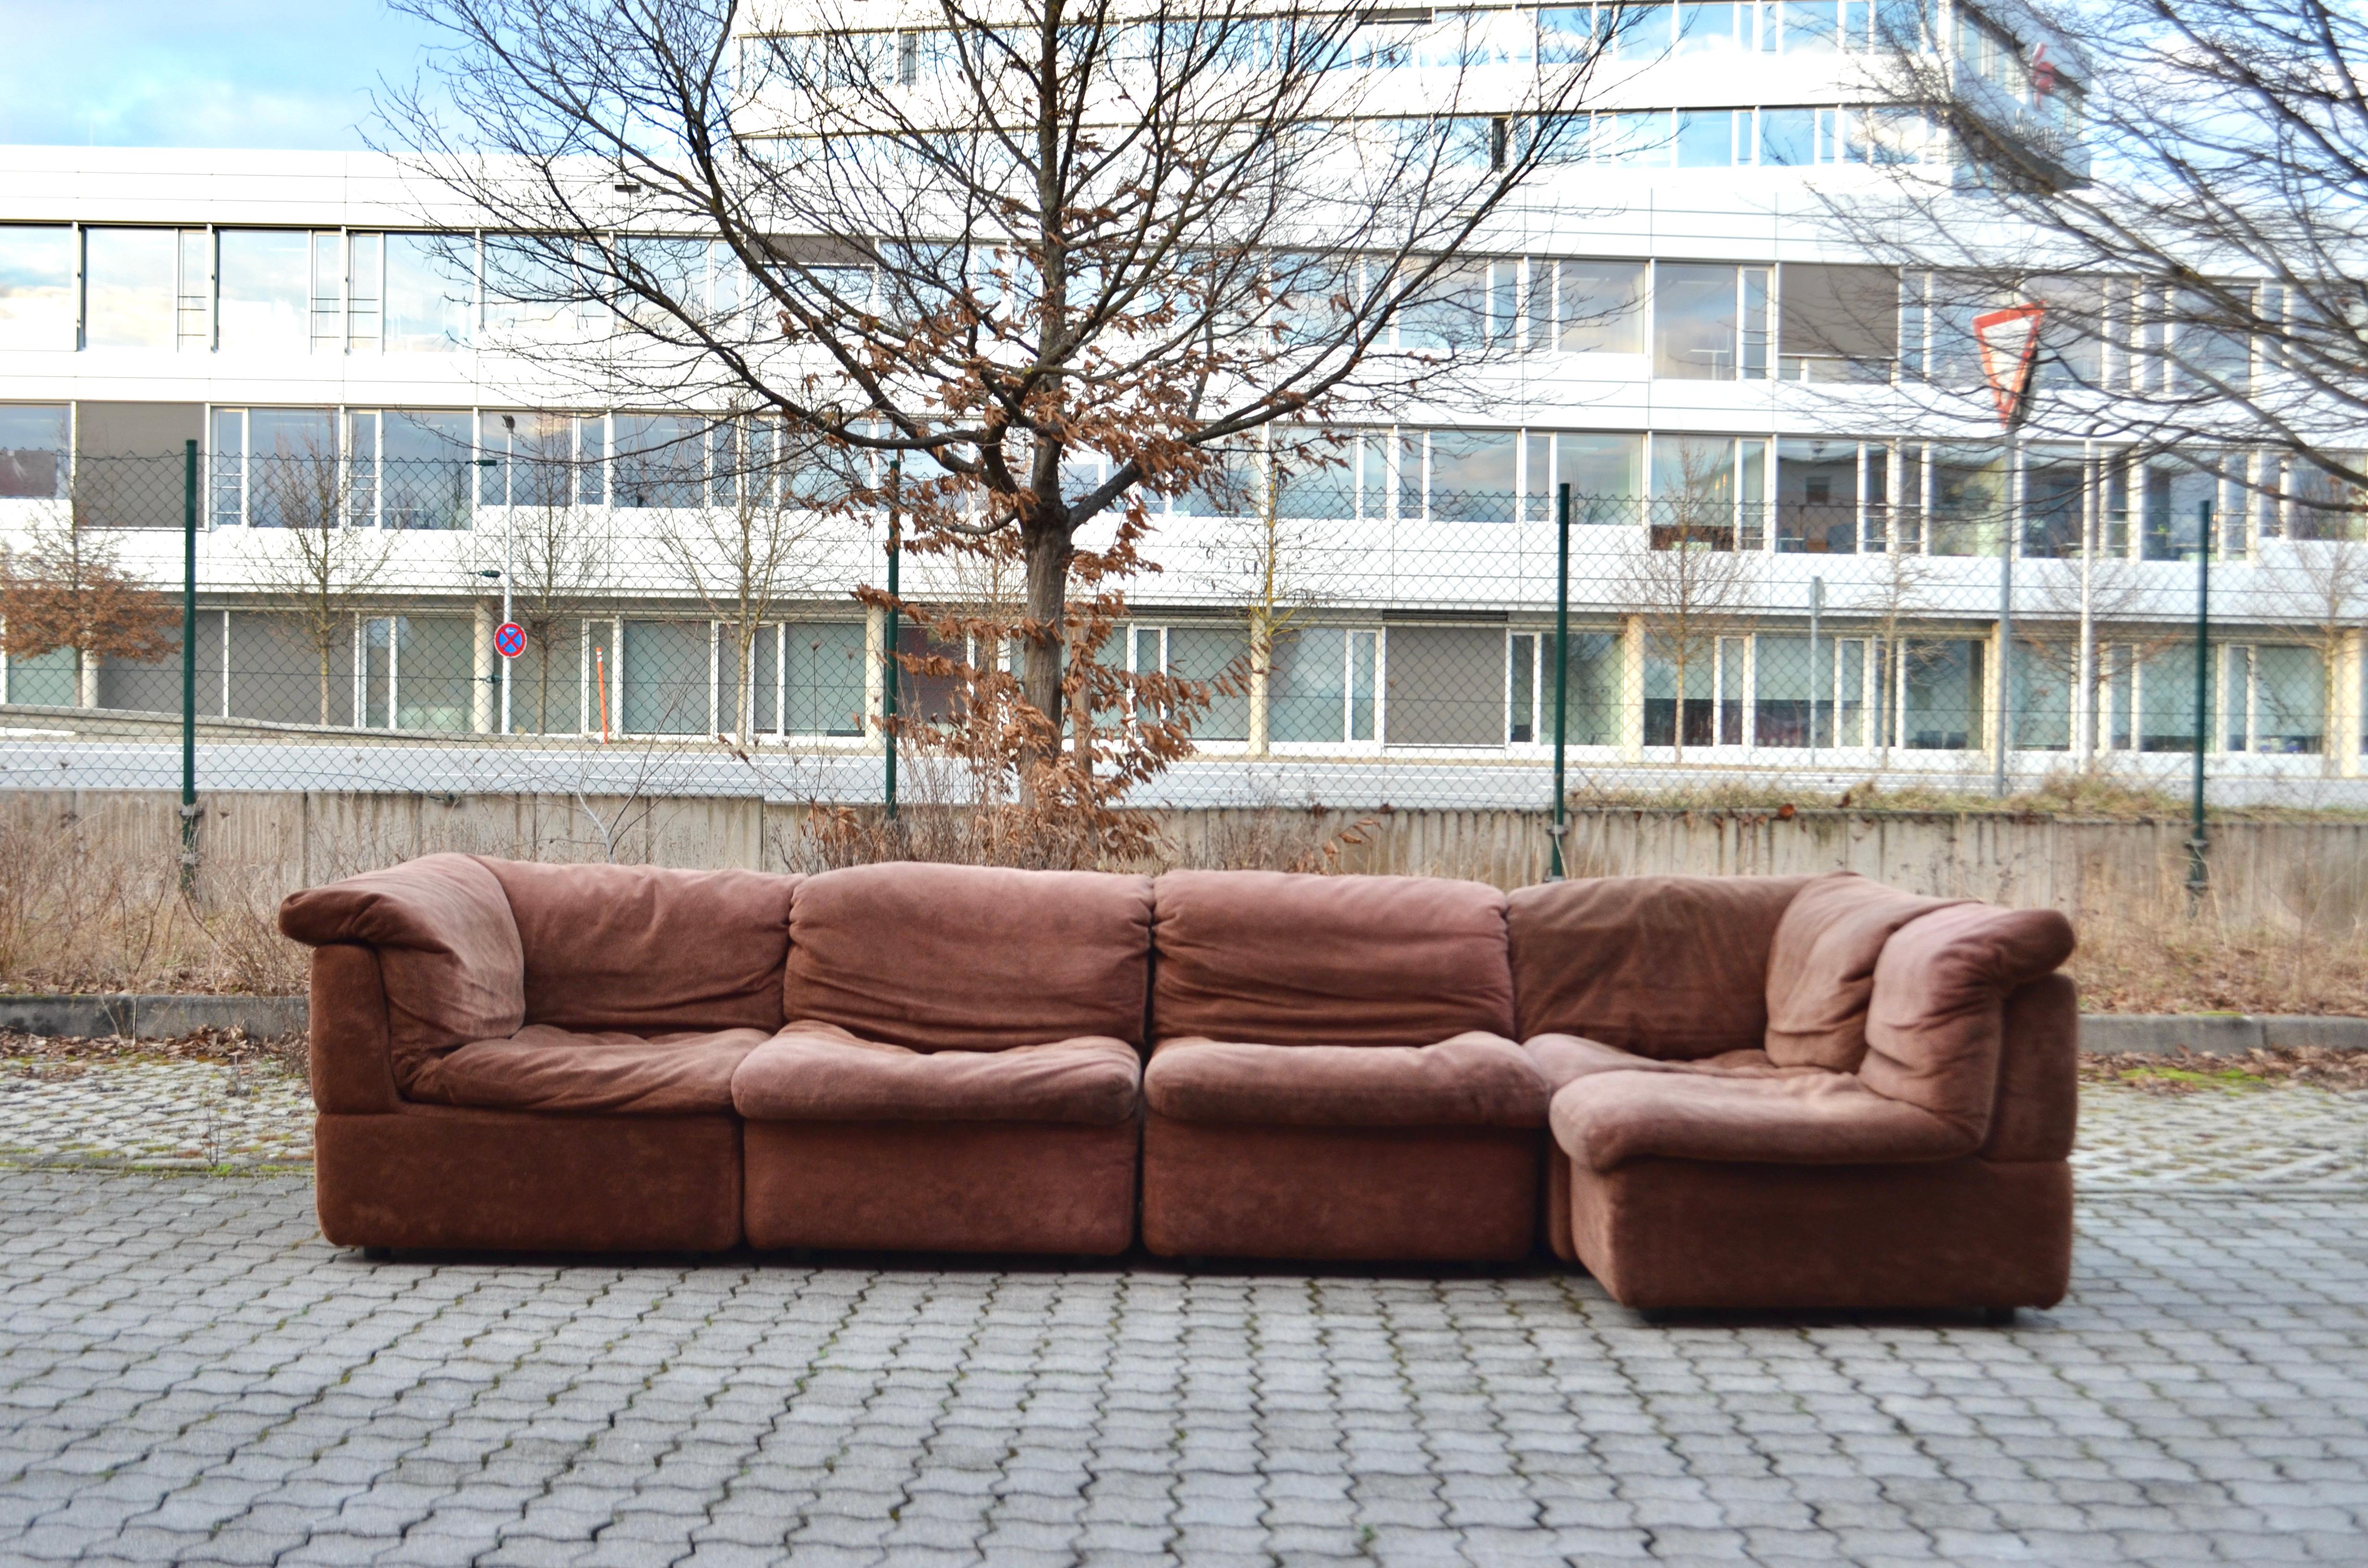 Ce canapé sectionnel modulaire a été conçu par Rolf Benz et fabriqué en Allemagne.
Il s'agit d'un pur design des années 70 avec une forme moderne et intemporelle.
Le tissu est en velours et a une couleur brune avec un toucher doux.
Le cadre de